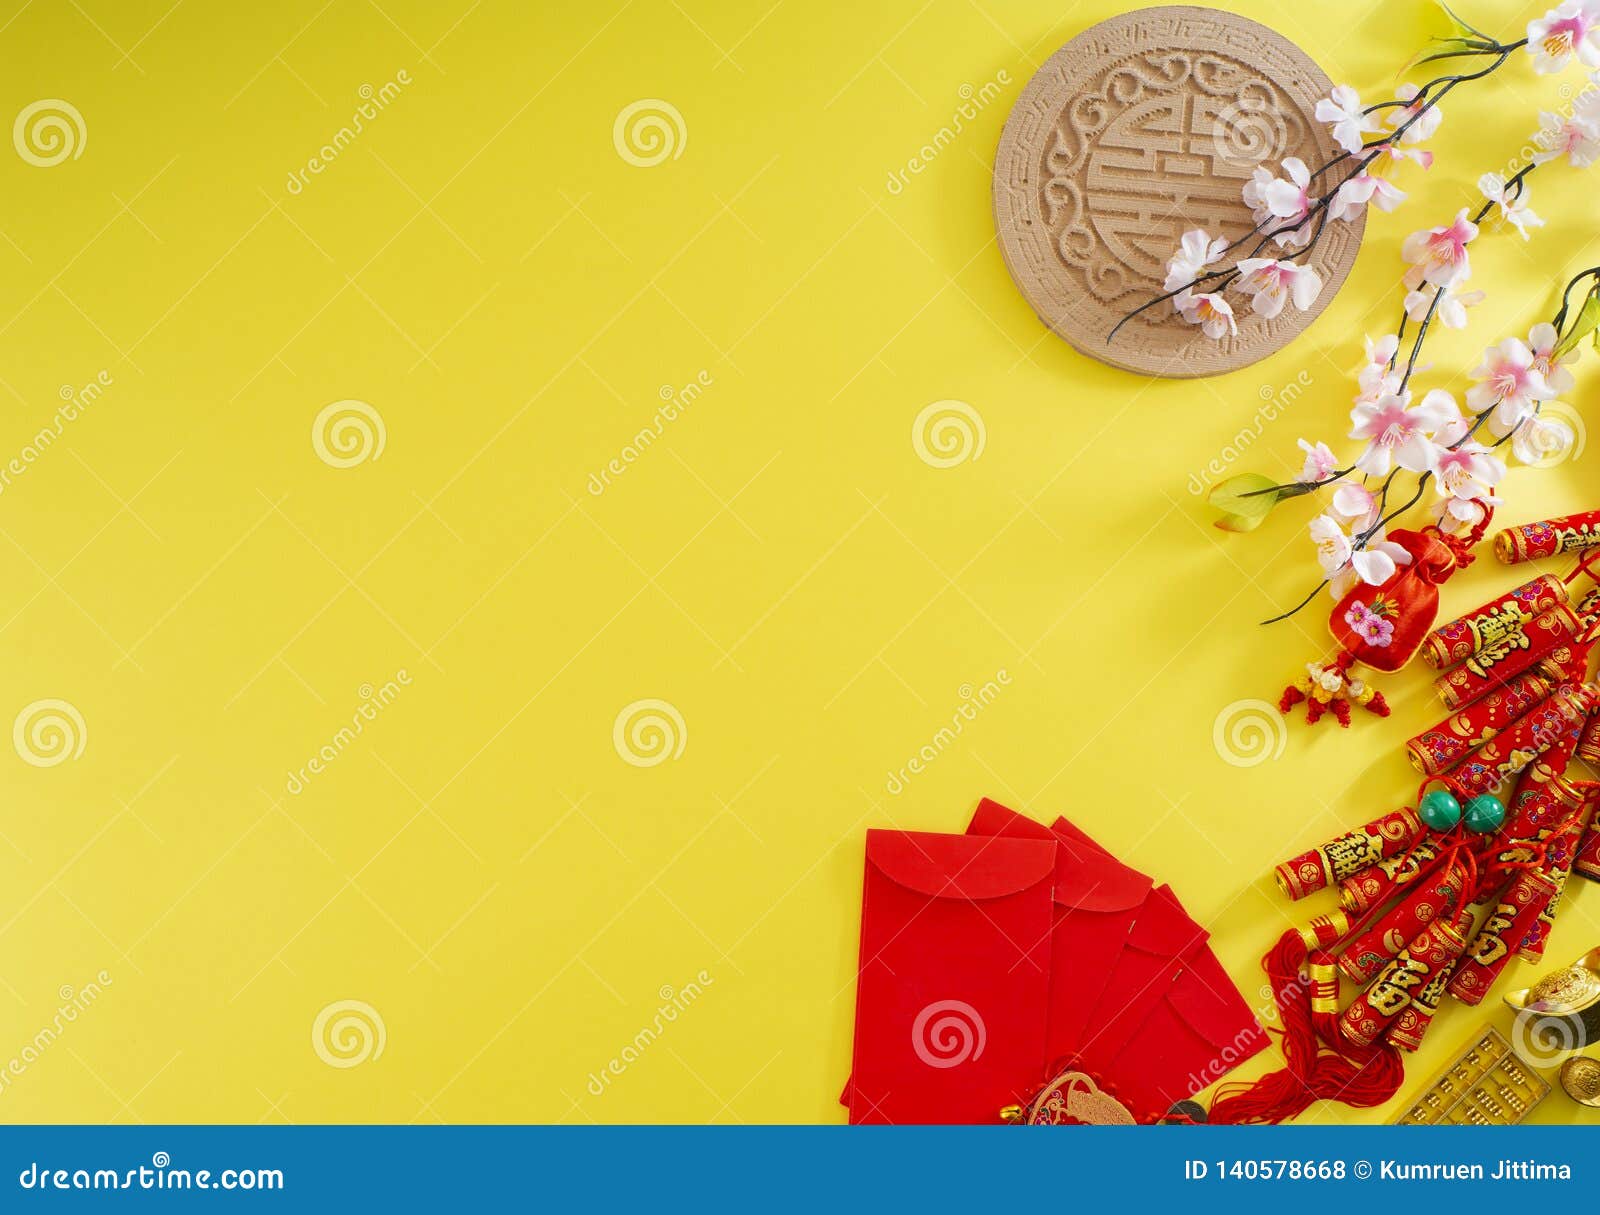 Banner nền Tết Trung Quốc: Một bức tranh nền Tết Trung Quốc đầy màu sắc sẽ đưa bạn tới một thế giới đầy phấn khích. Với những họa tiết truyền thống và đậm chất Văn hóa Trung Hoa, banner nền Tết Trung Quốc này chắc chắn sẽ khiến bạn say đắm. Hãy chuẩn bị tinh thần để được trải nghiệm những điều tuyệt vời mà chúng ta sẽ cùng nhau tạo ra. 